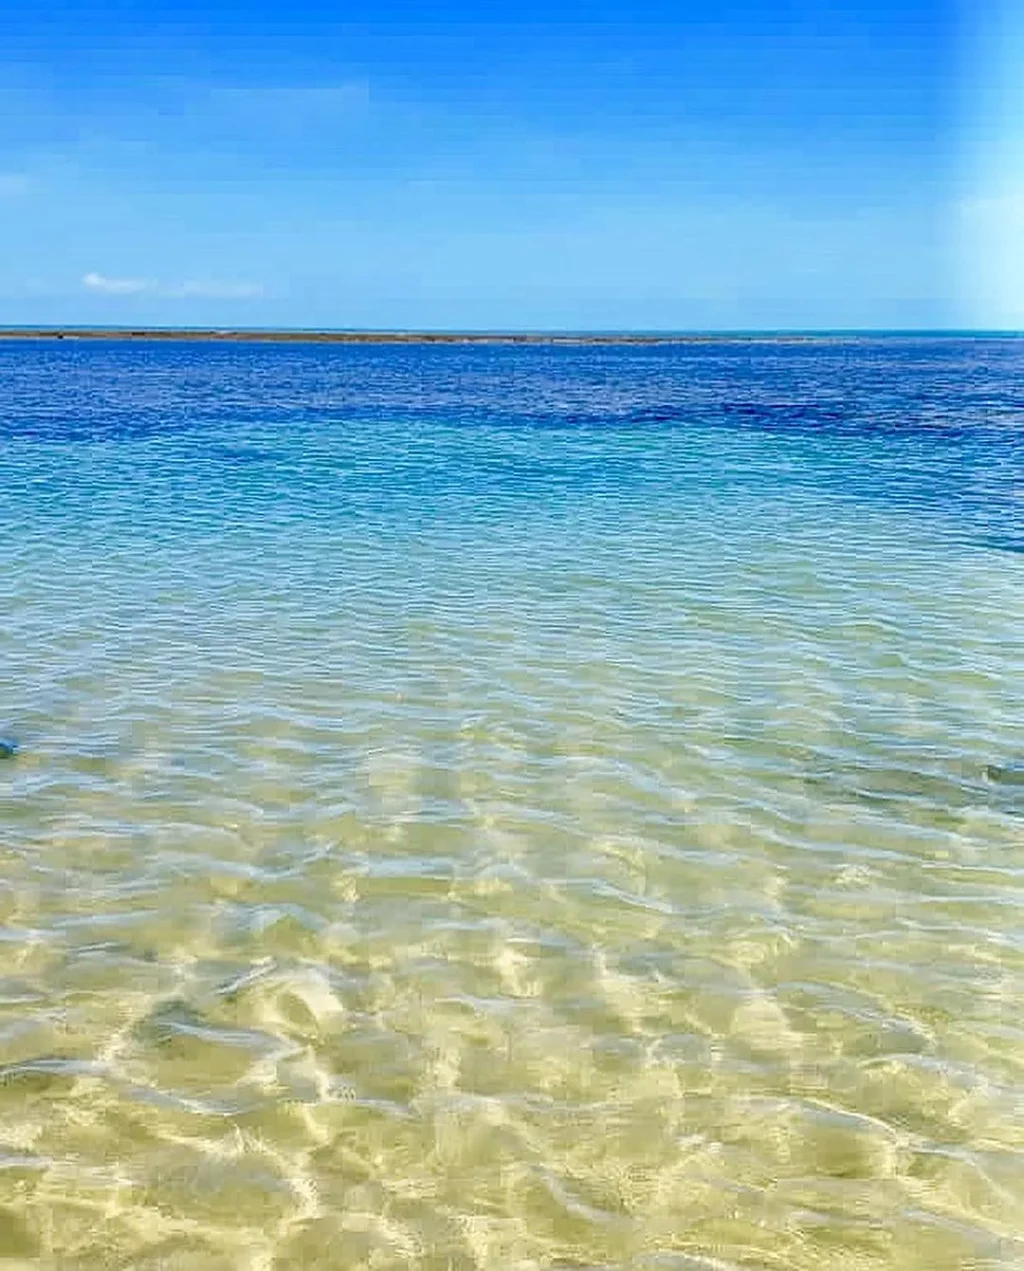 O Nordeste brasileiro é conhecido por suas praias paradisíacas, com águas cristalinas, areia branca e coqueiros. Há muitas praias na r